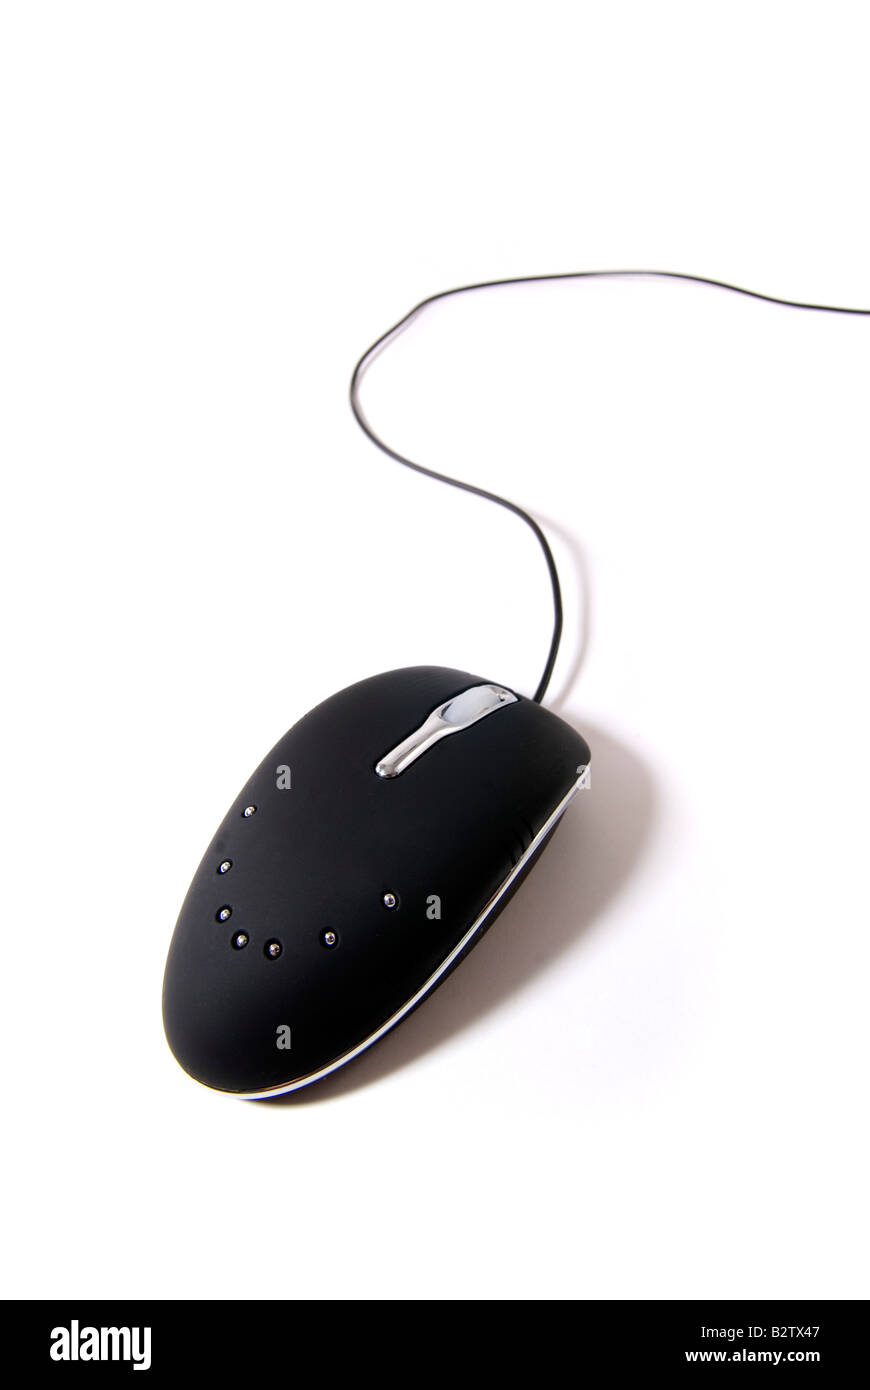 Un ratón de ordenador aisladamente Foto de stock